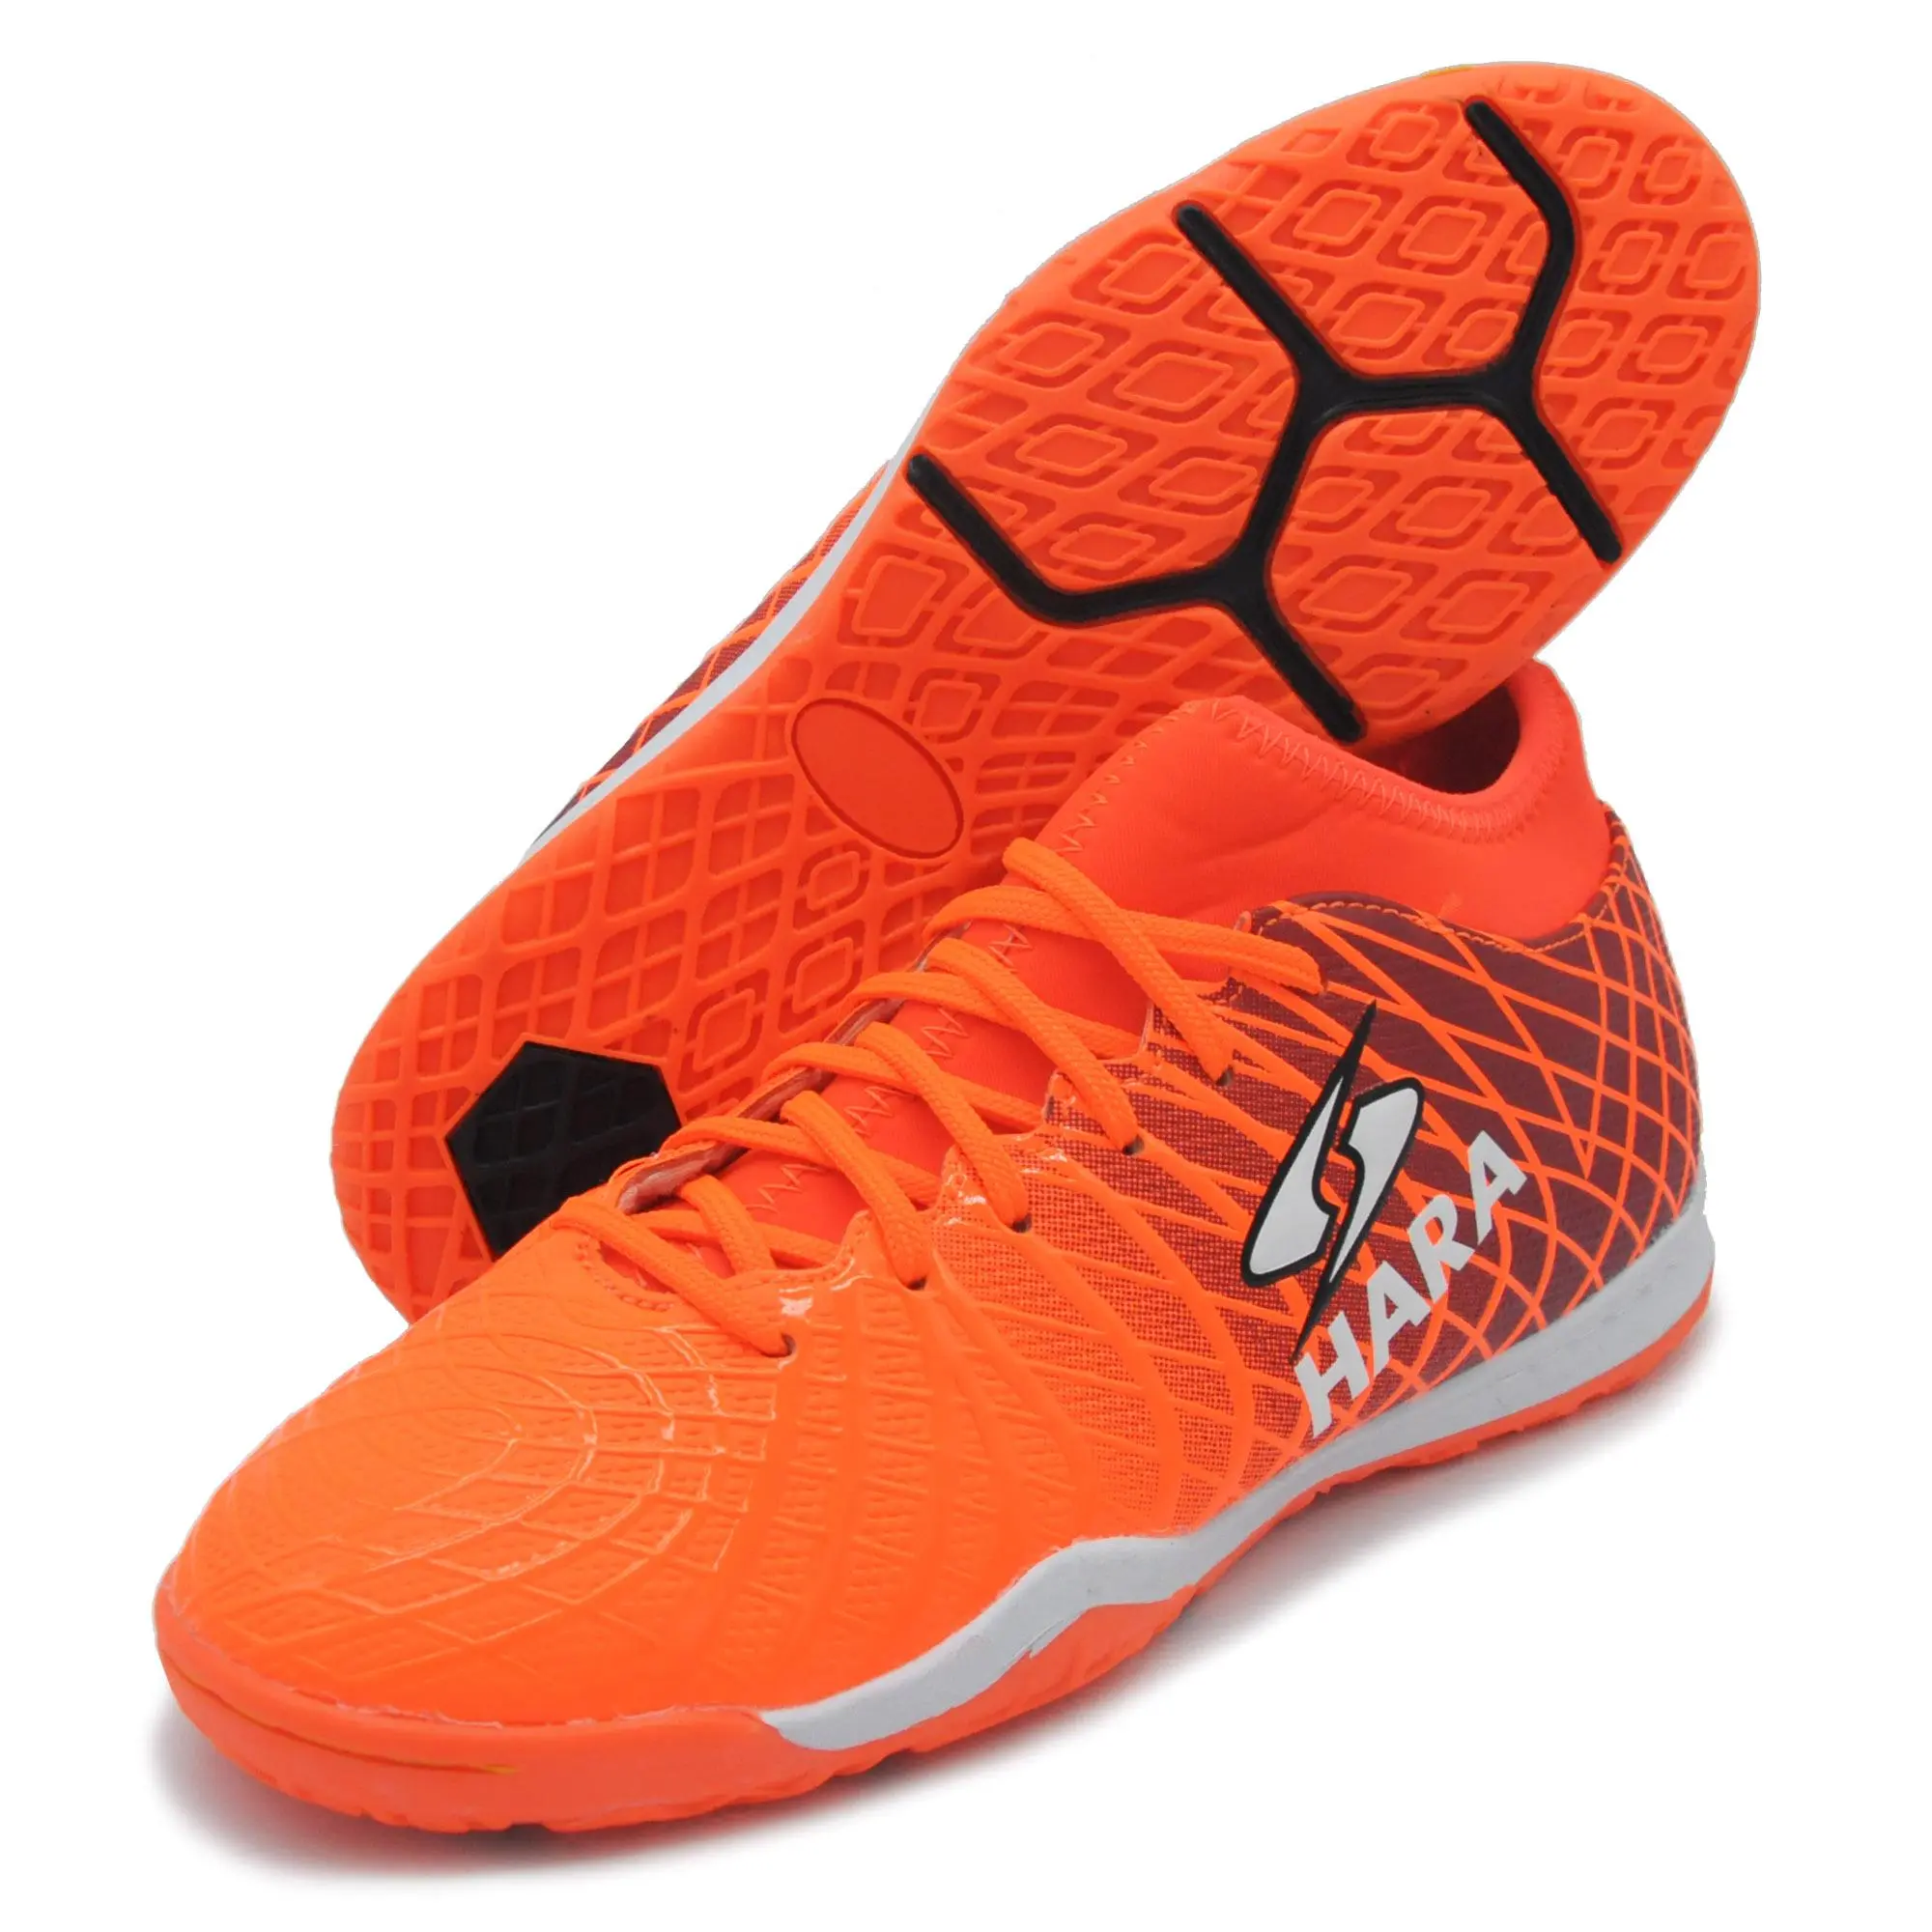 HARA ลดราคาพิเศษ 39-40 รองเท้าฟุตซอล หุ้มข้อ รุ่น FS88X3 สีส้ม รองเท้าฟุตซอลเด็ก